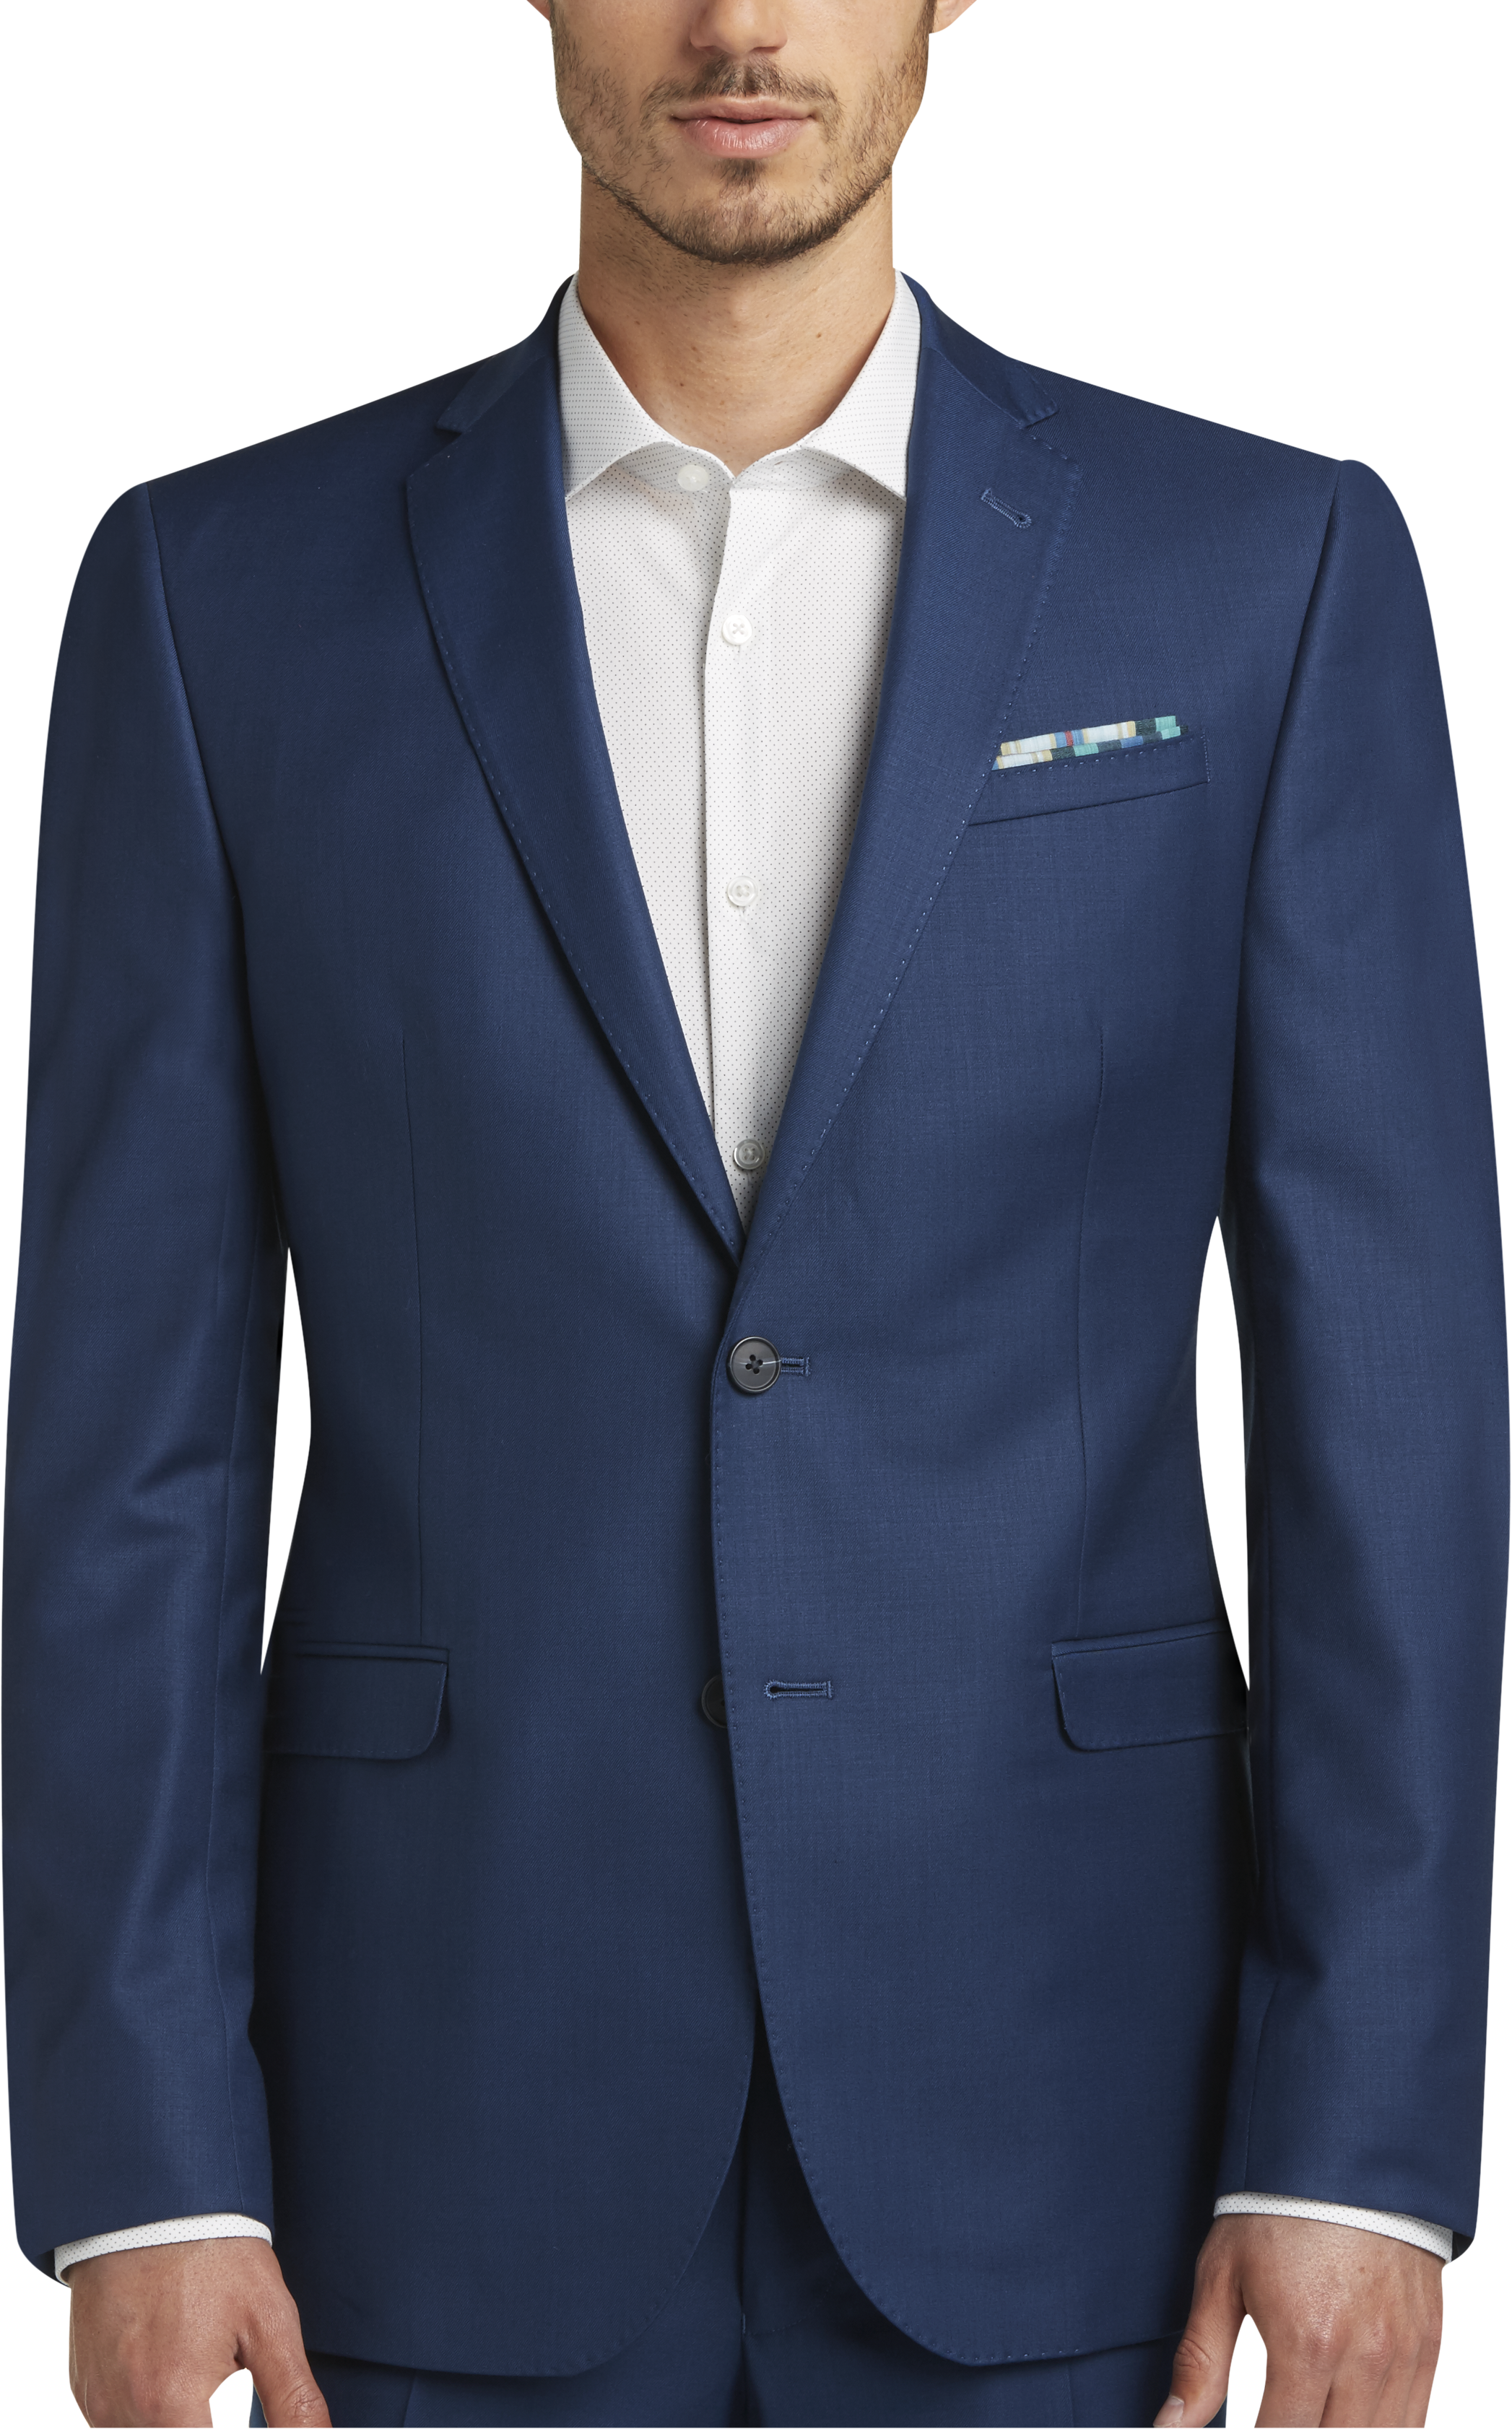 Egara Blue Extreme Slim Fit Suit - Men's Extreme Slim Fit | Men's Wearhouse